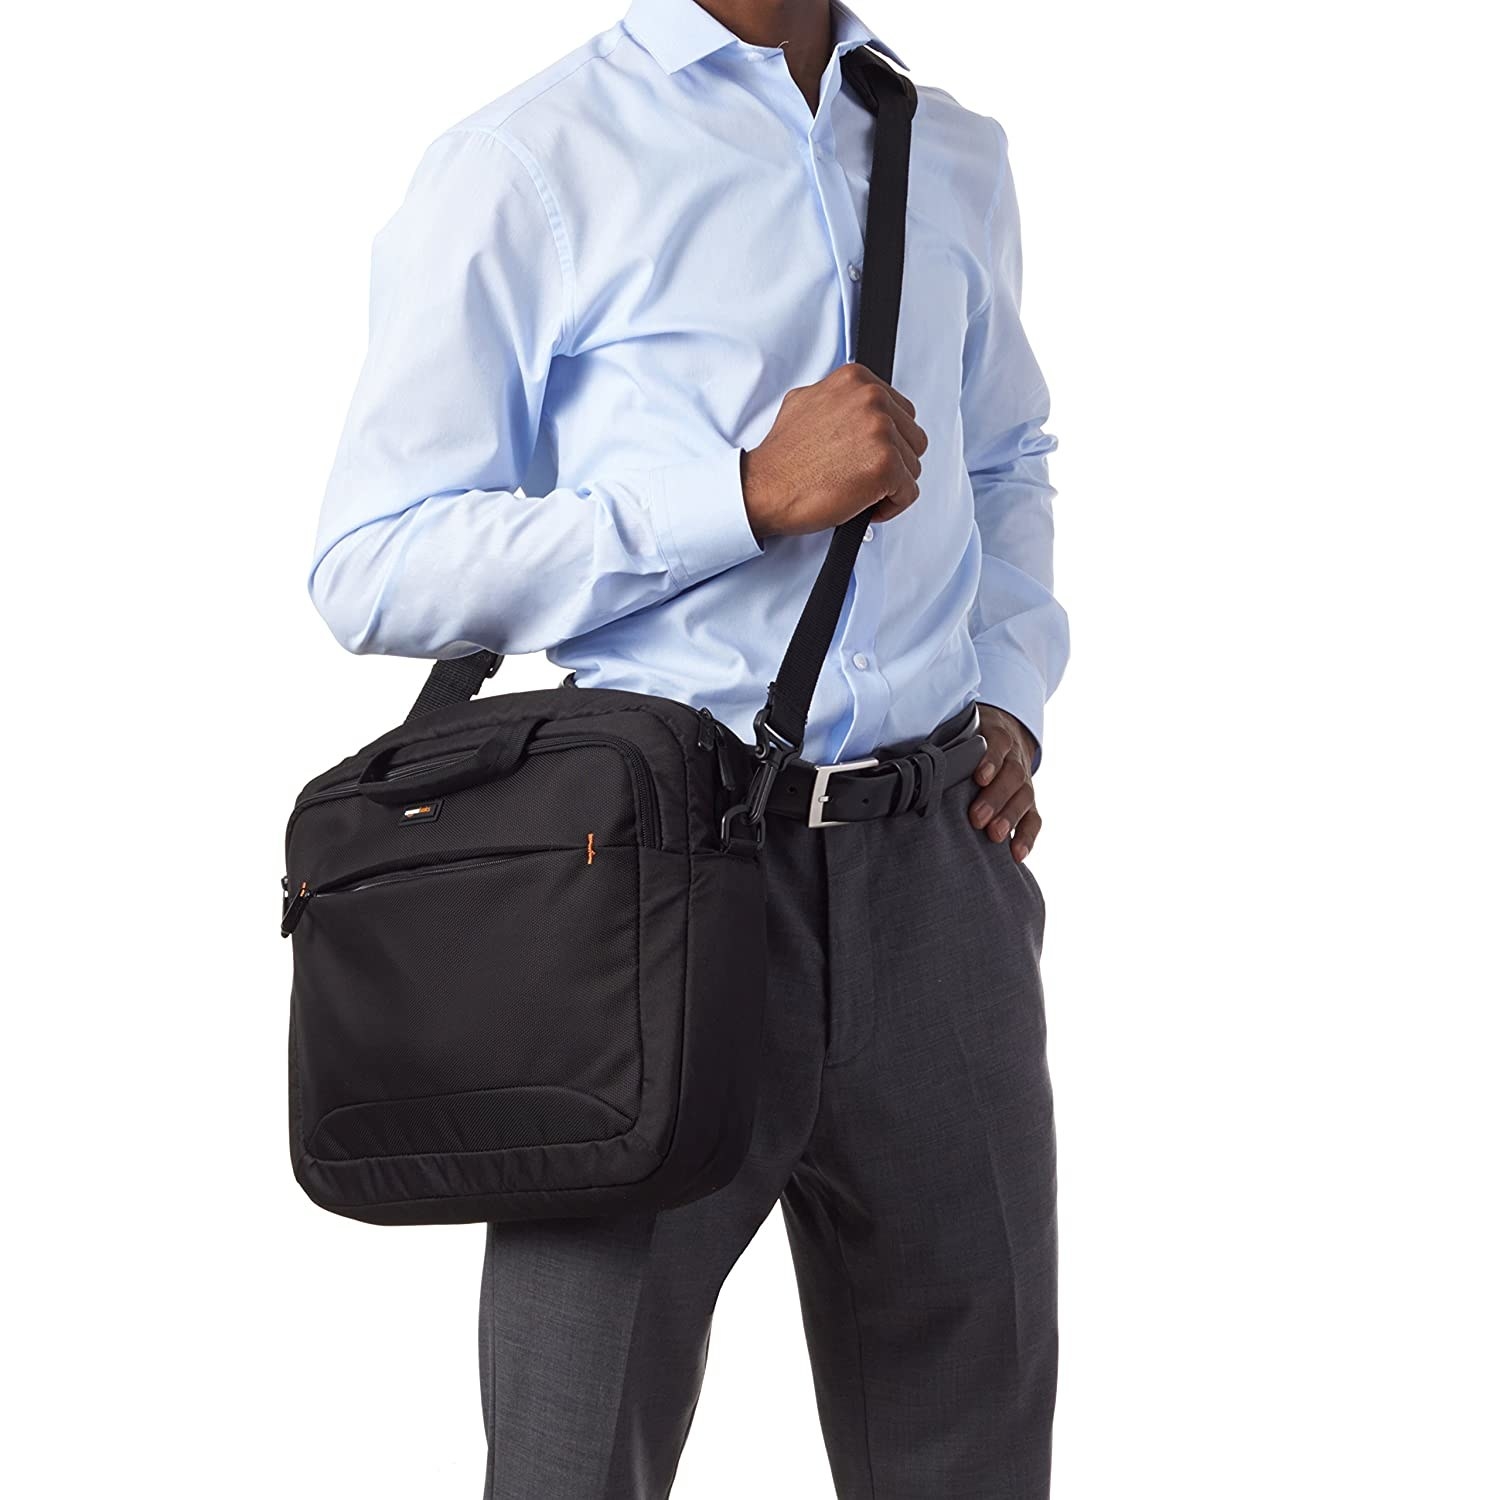 A man with a black laptop bag slung across his shoulders